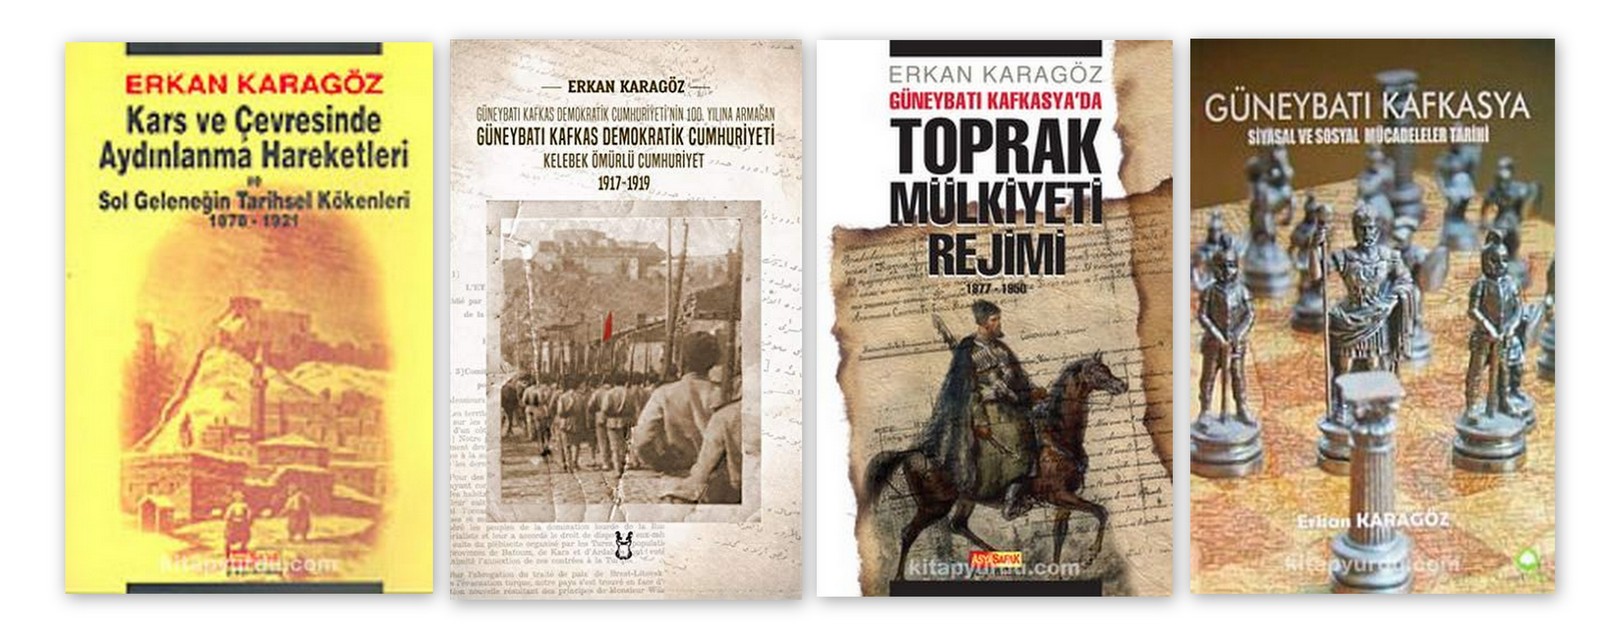 Avukat Erkan Karagöz'ün kitapları.jpg